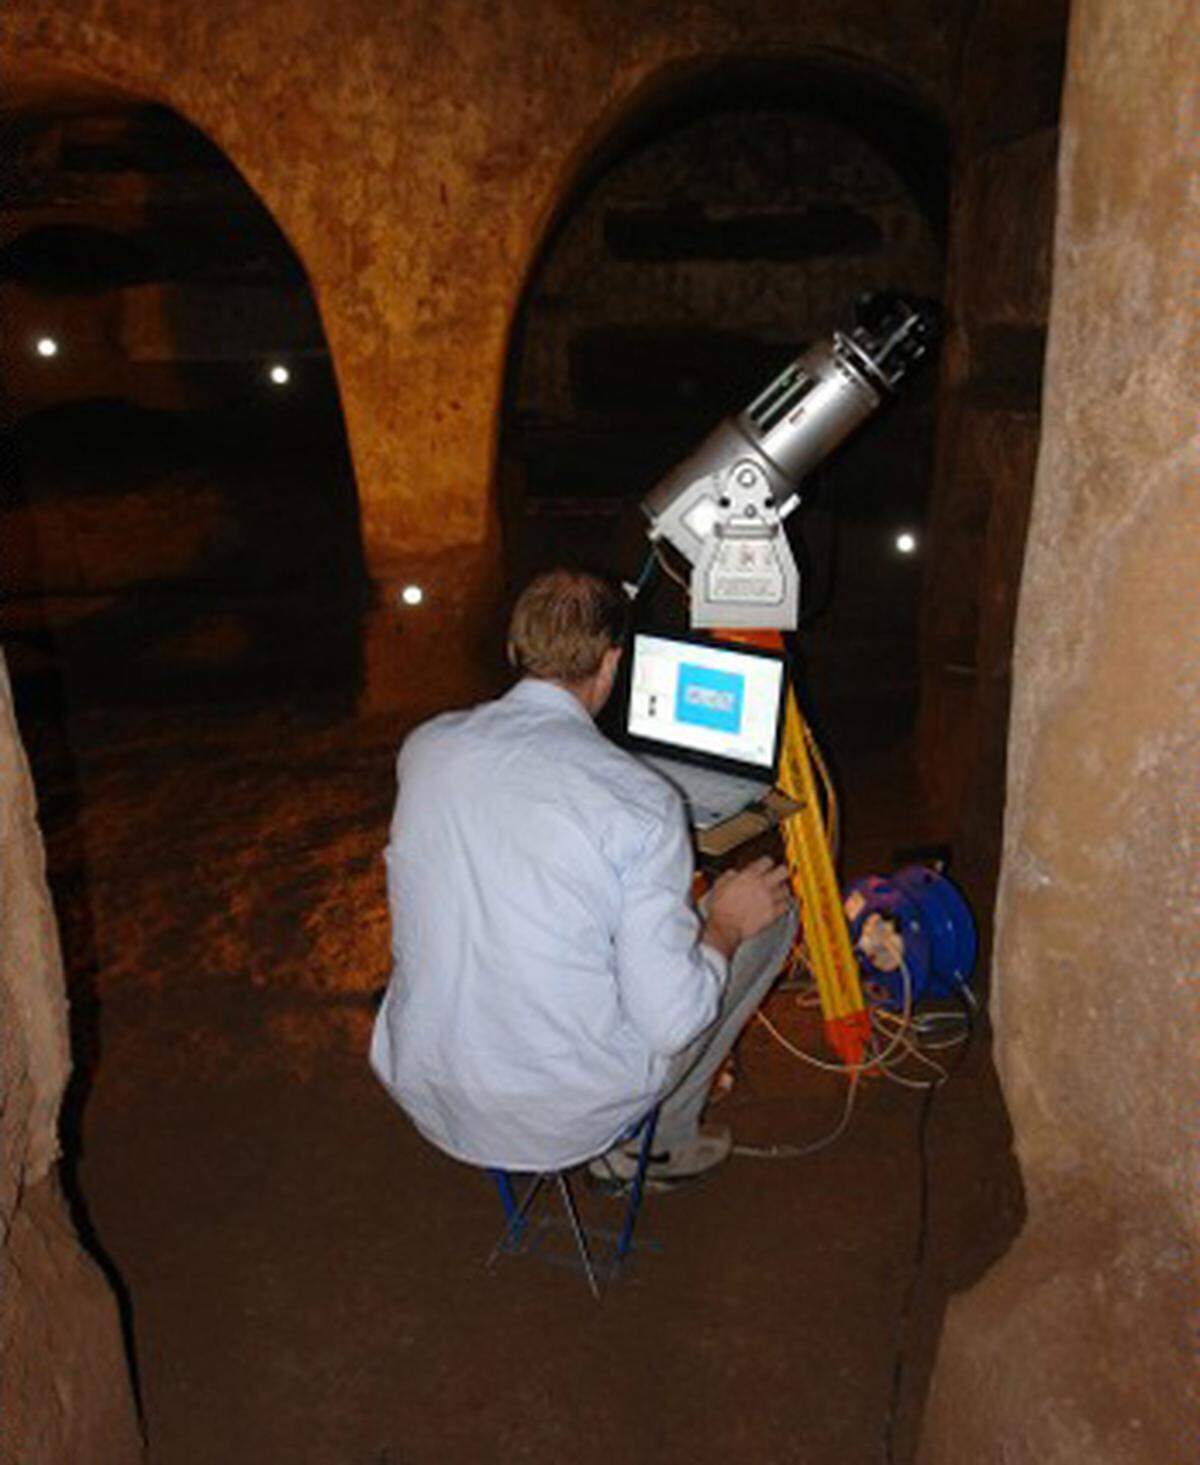 2006 begannen die Arbeiten. Mit Laserscannern tasteten die Forscher einzeln die Räume der riesigen Katakombe ab. Der Scanner orientiert sich an Reflektorpunkten und erzeugt ein 360-Grad-Panorama. Eine Digitalkamera fotografiert gleichzeitig die Wandgemälde.